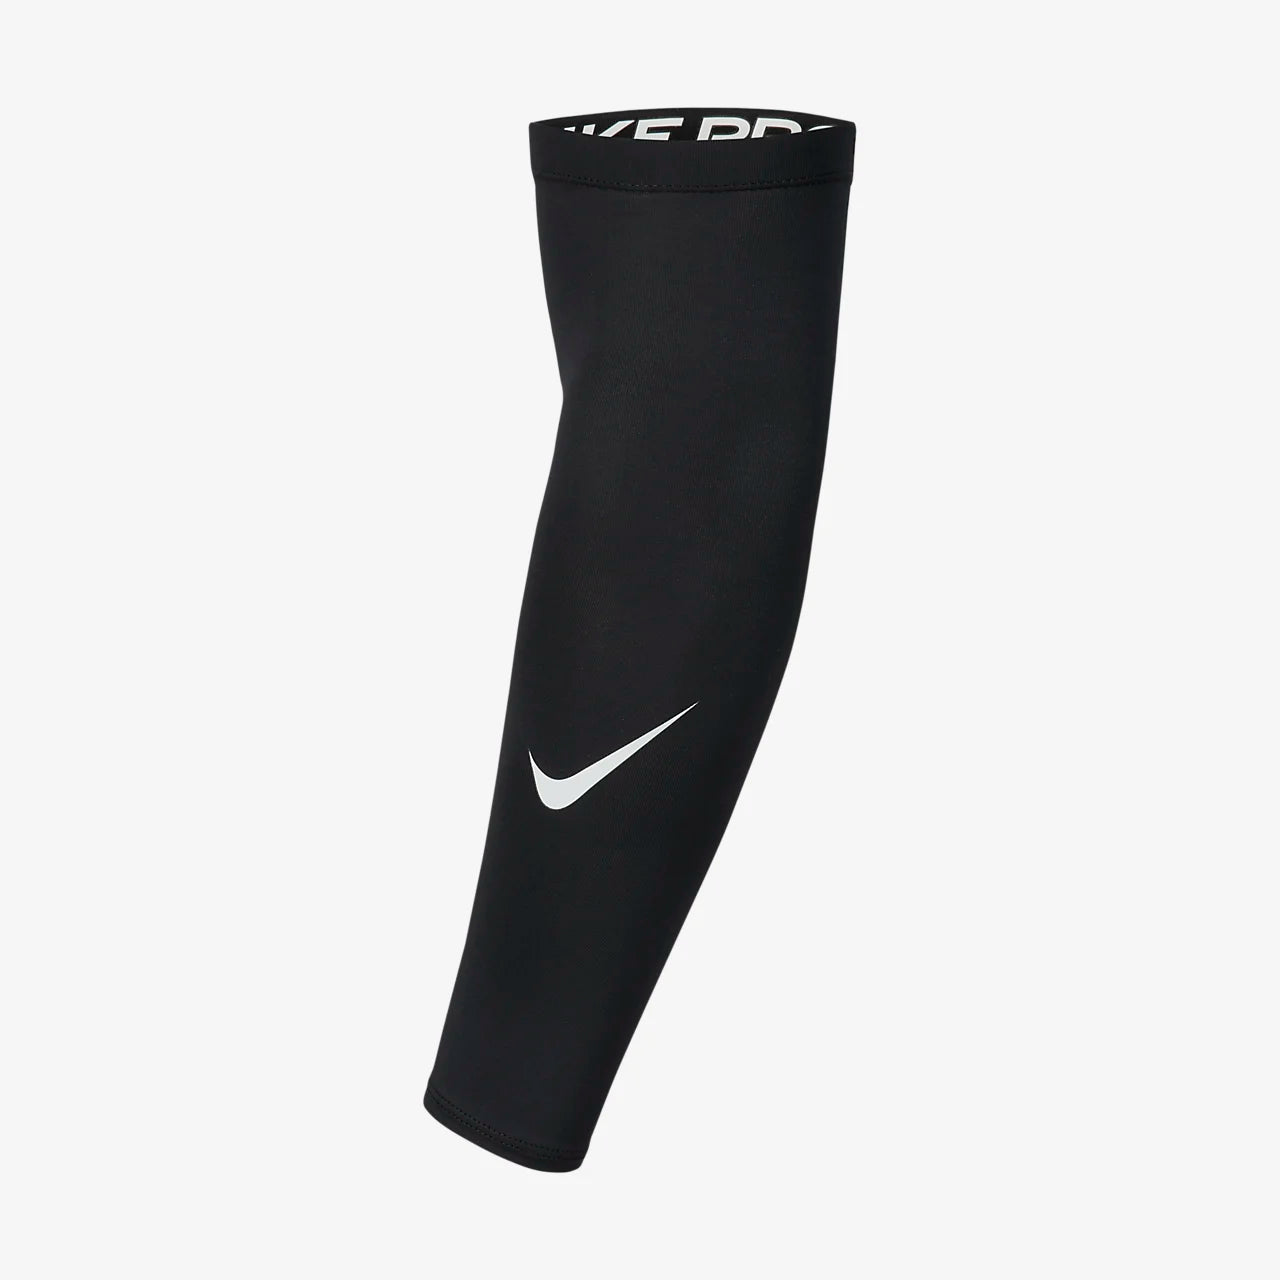 Nike unisex arm sleeve - Black